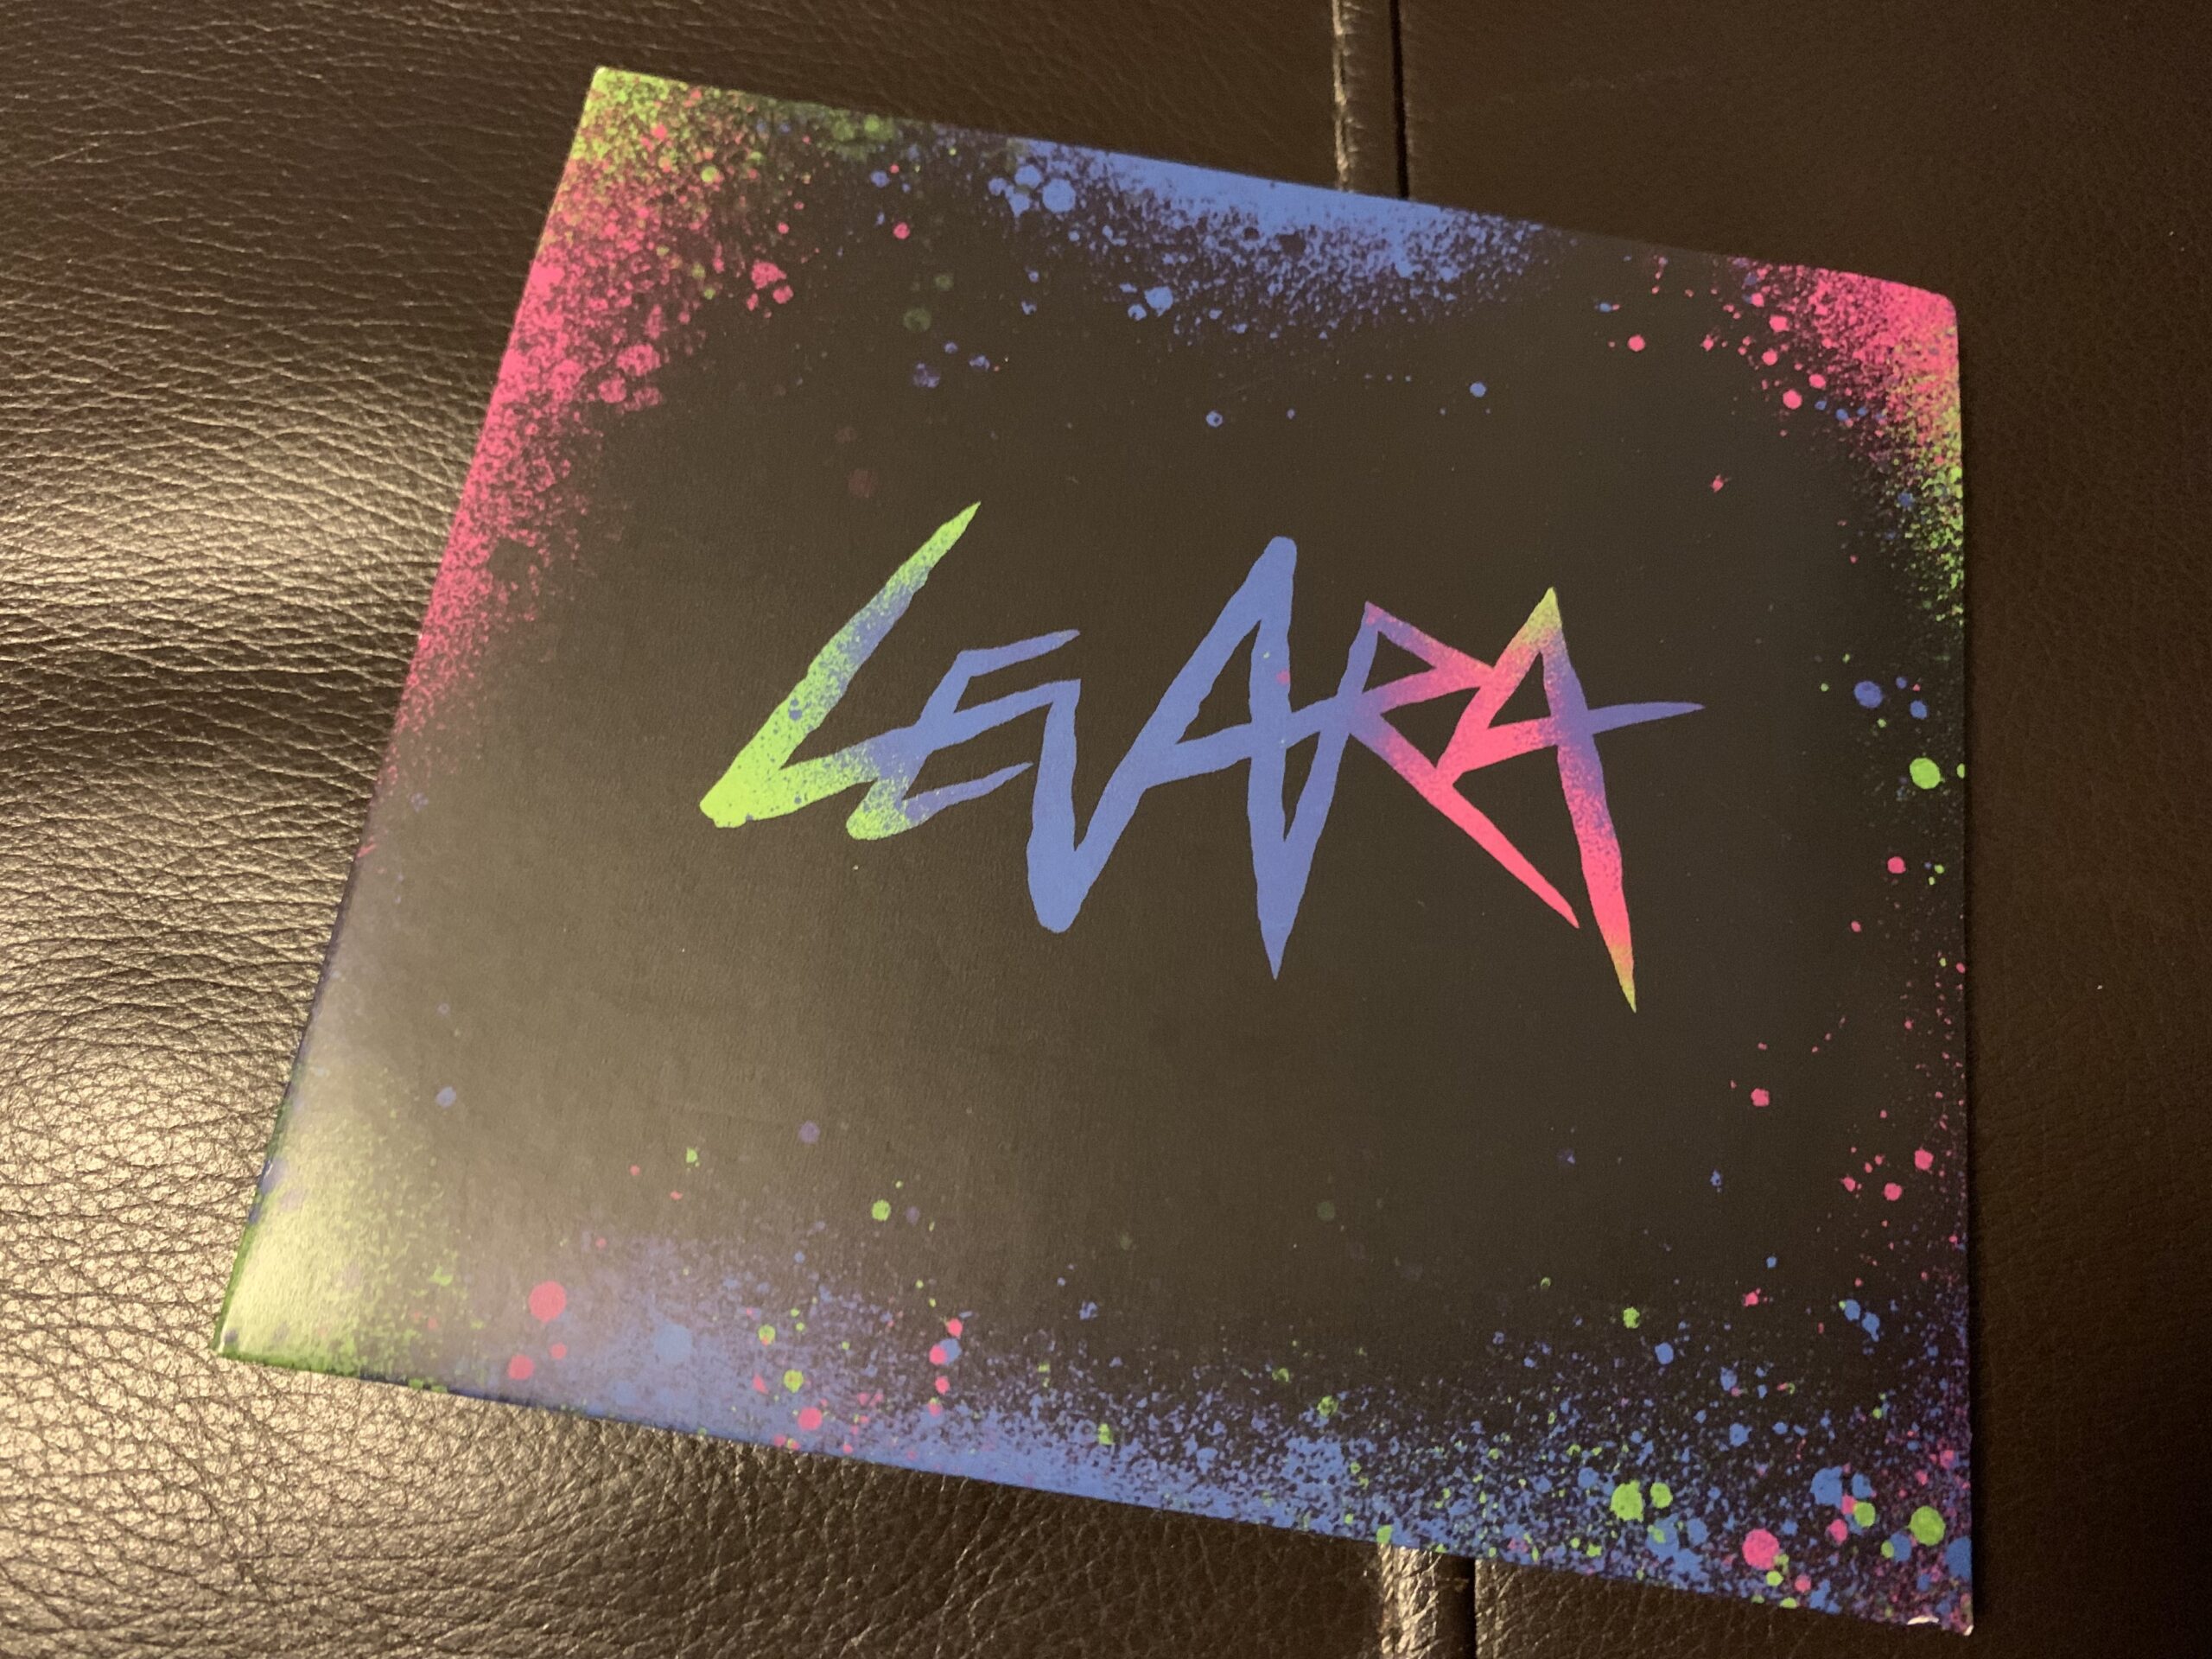 Trev Lukather率いるロックトリオLevaraのデビューアルバム『Levara』を聴いた感想